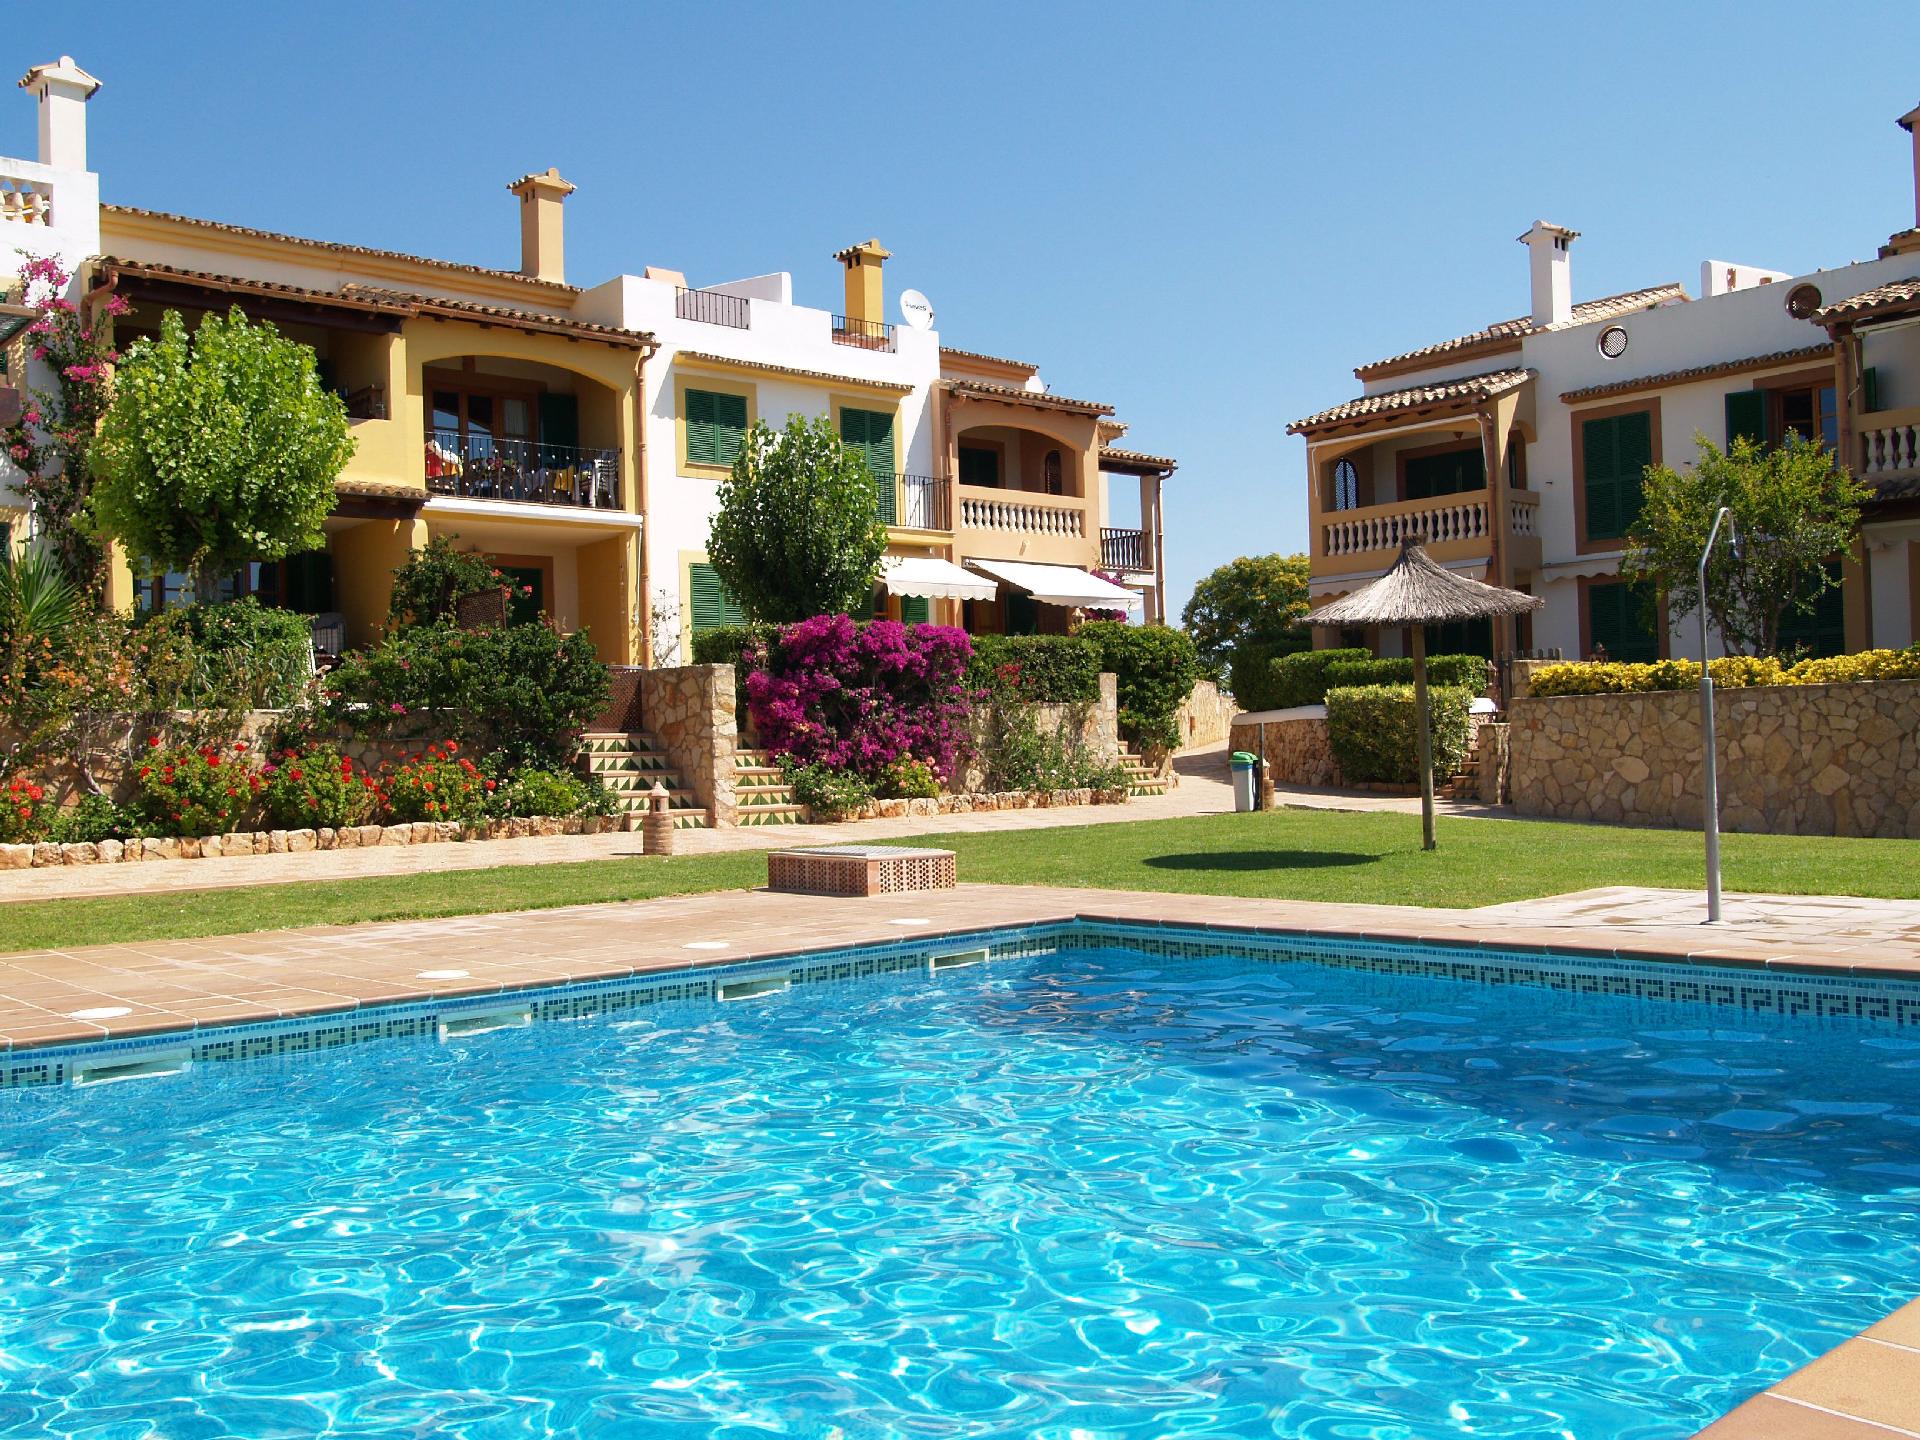 Ferienwohnung für 4 Personen ca. 85 m² i Ferienwohnung  Mallorca SÃ¼d